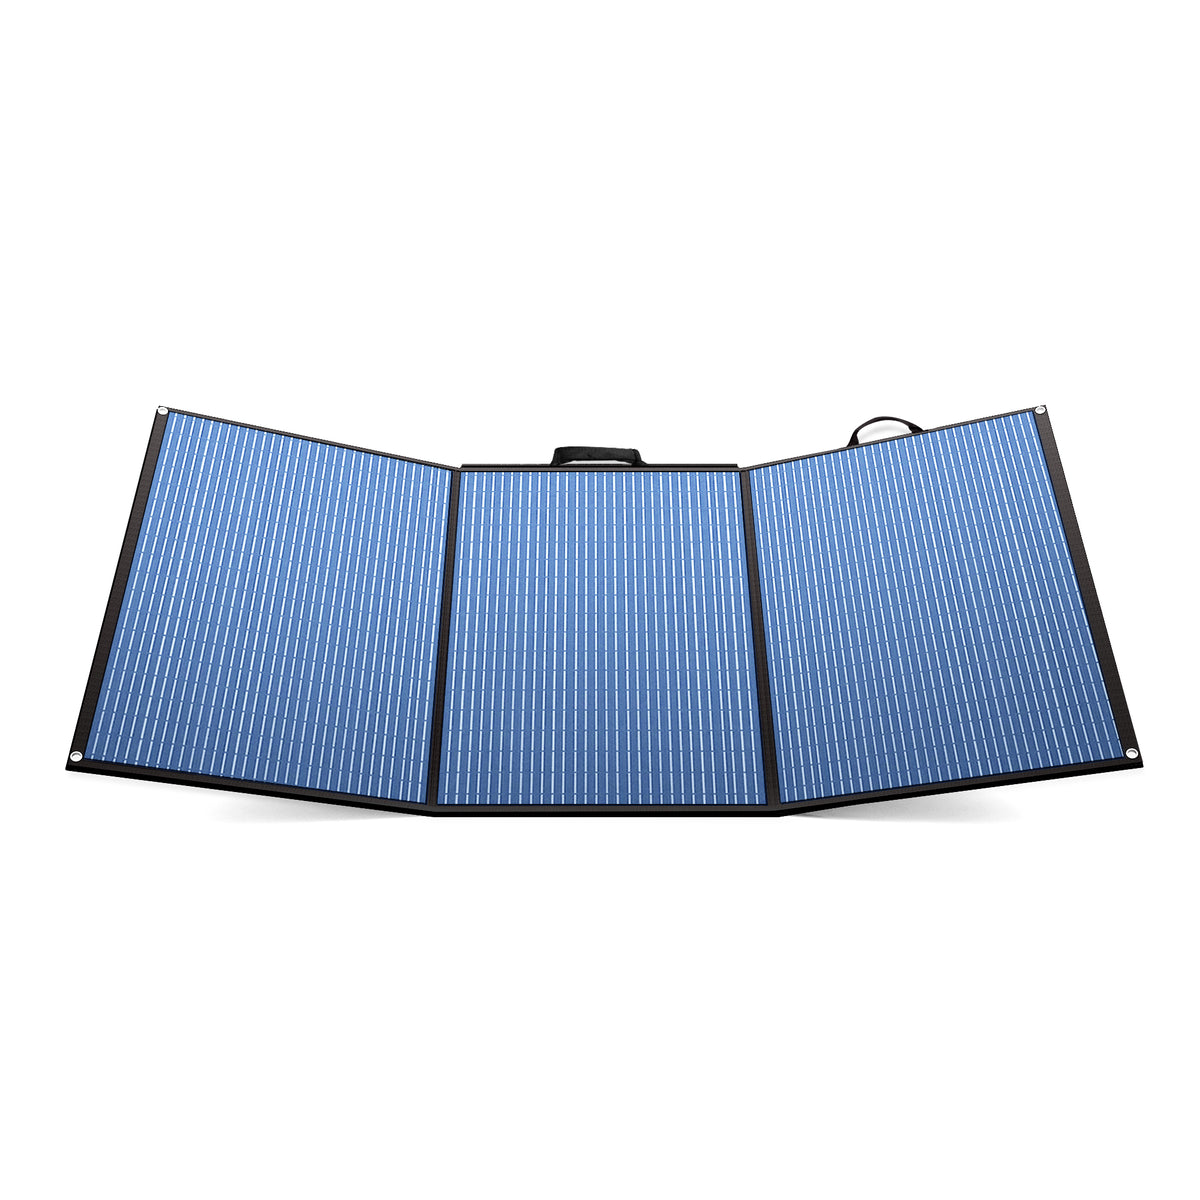 100W/200W Solar Panel | SX100/SX200